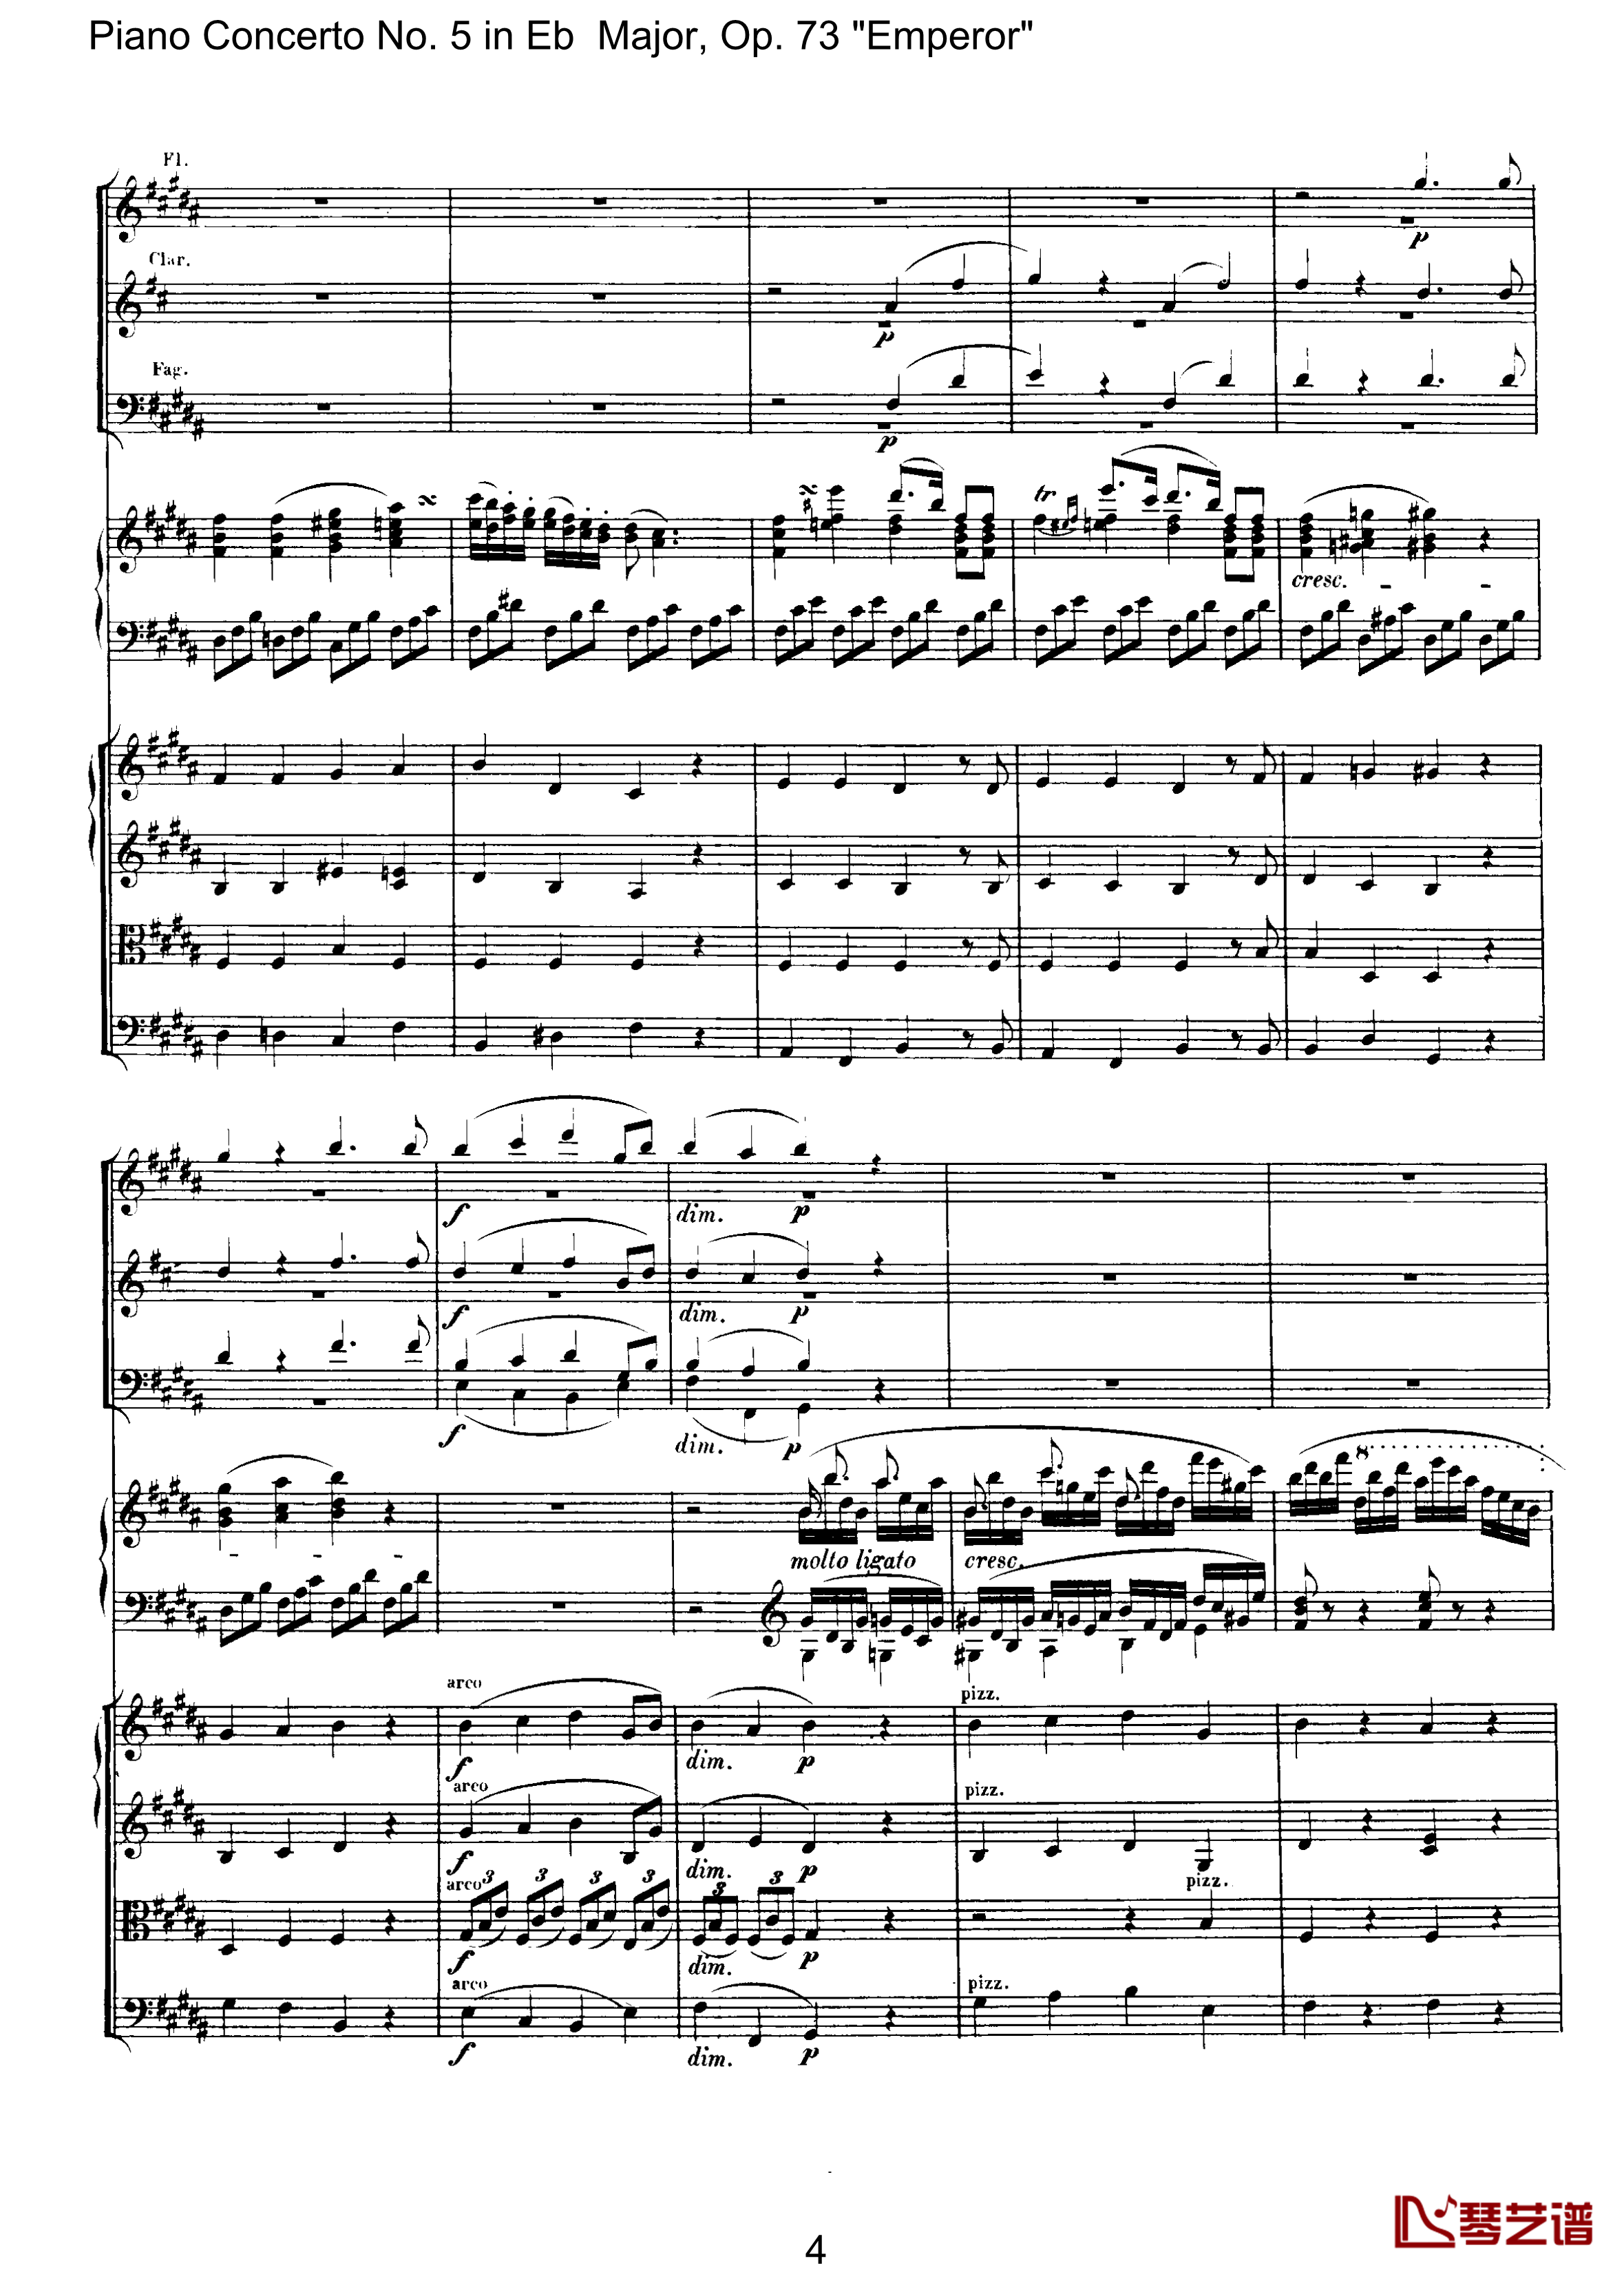 皇帝第二乐章钢琴谱-贝多芬-总谱-第五钢琴协奏曲beethoven4